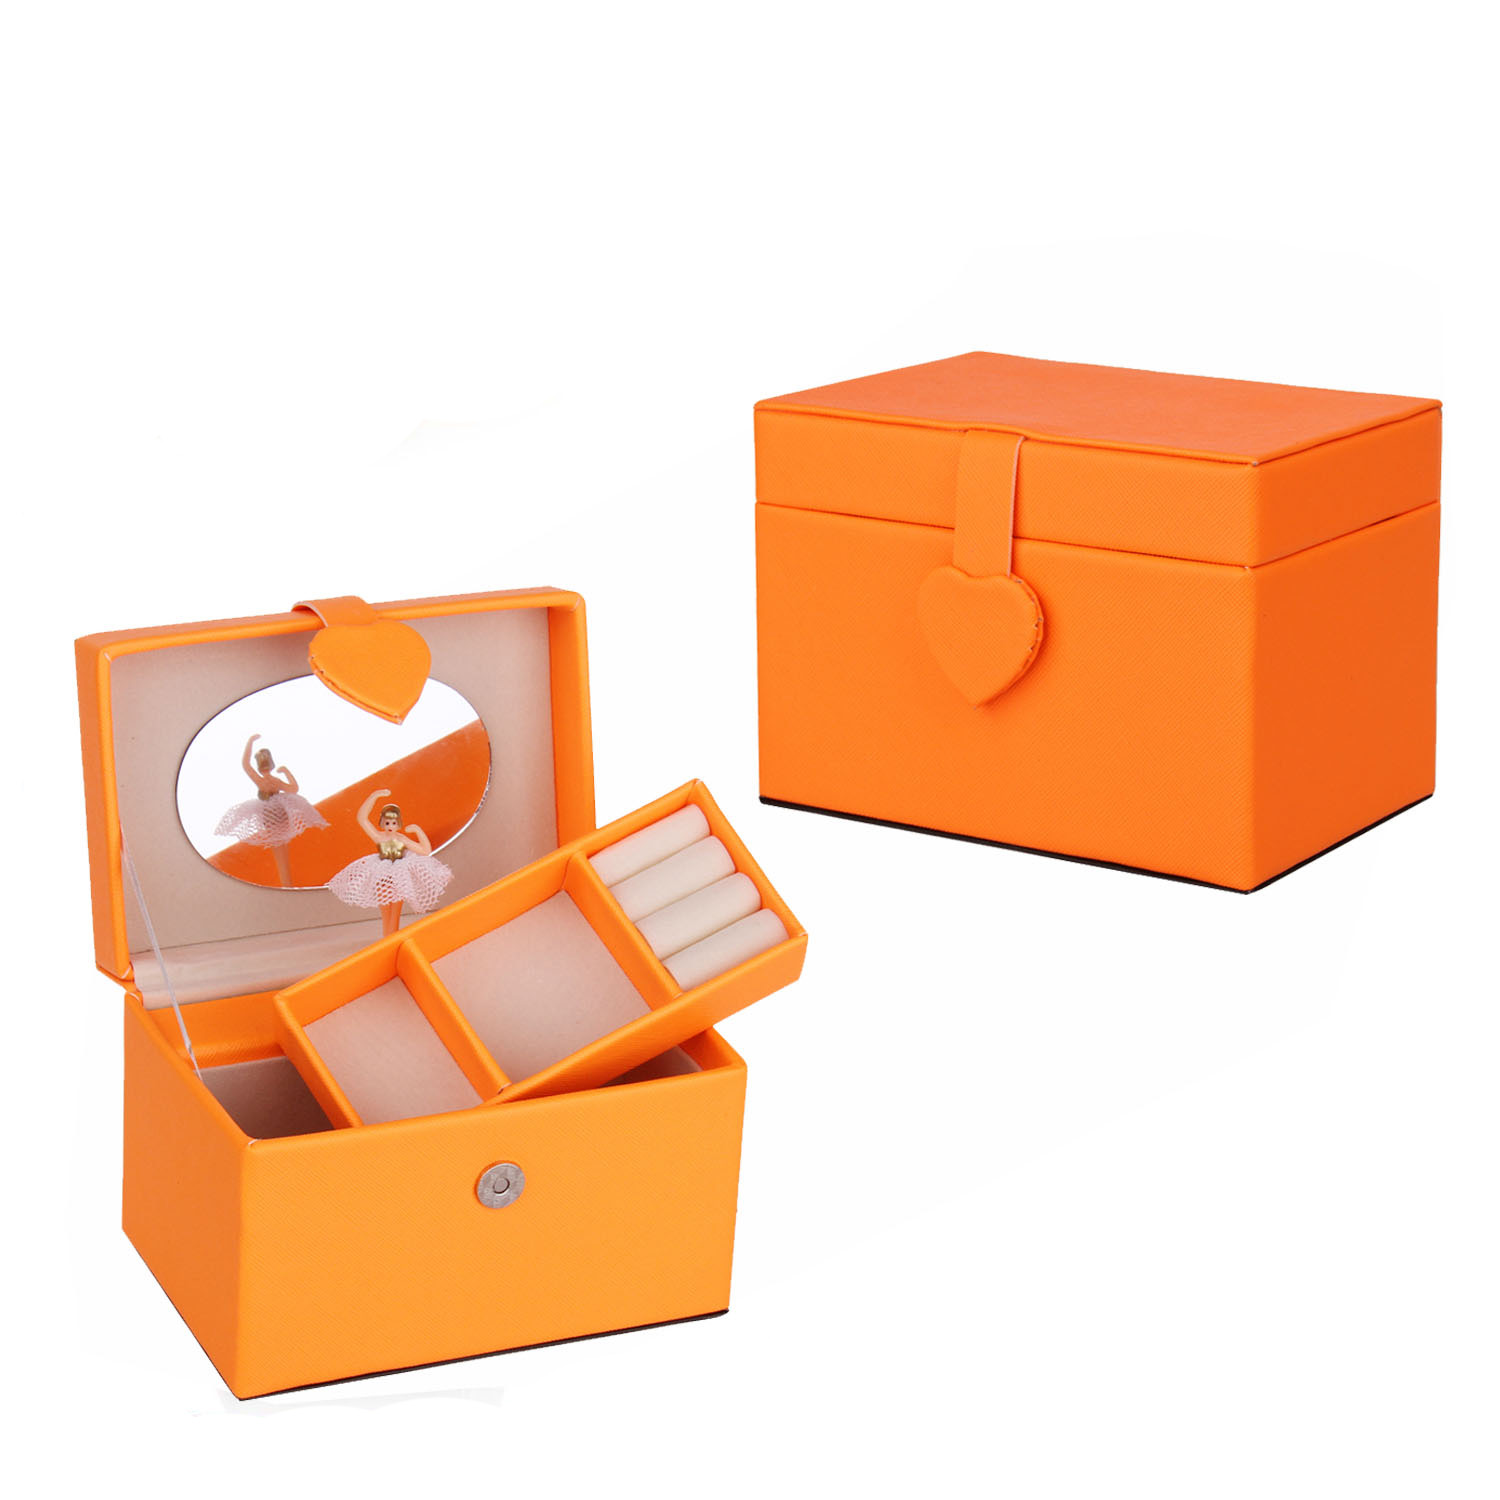  Wholesale pu jewelry music box for girls/lady